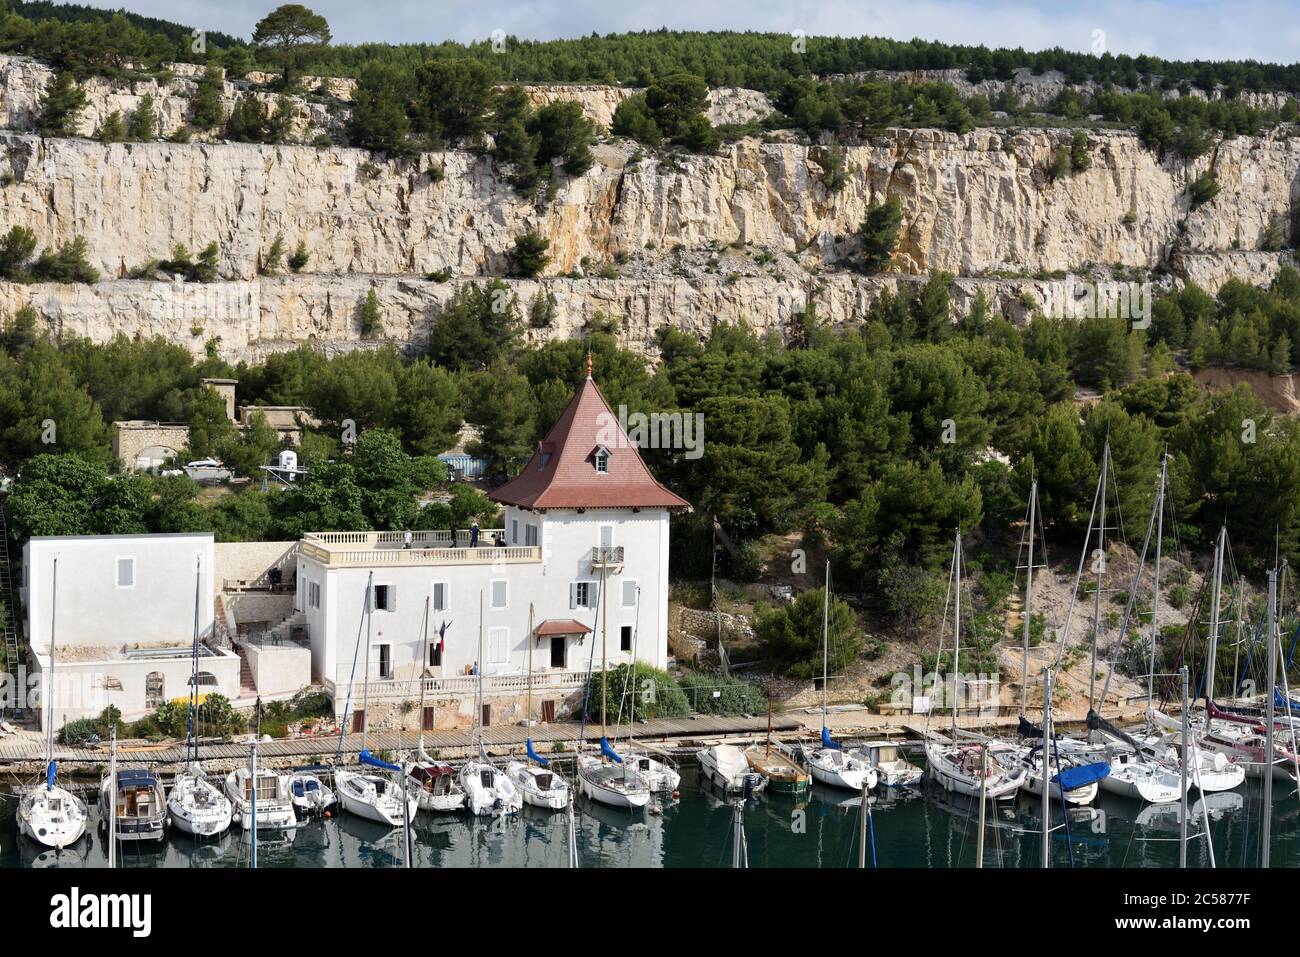 Kapitänsgalerie im historischen Schloss, Yacht Club & festgetäute Yachten in Calanque de Port-Miou Calanques Nationalpark Cassis Provence Frankreich Stockfoto